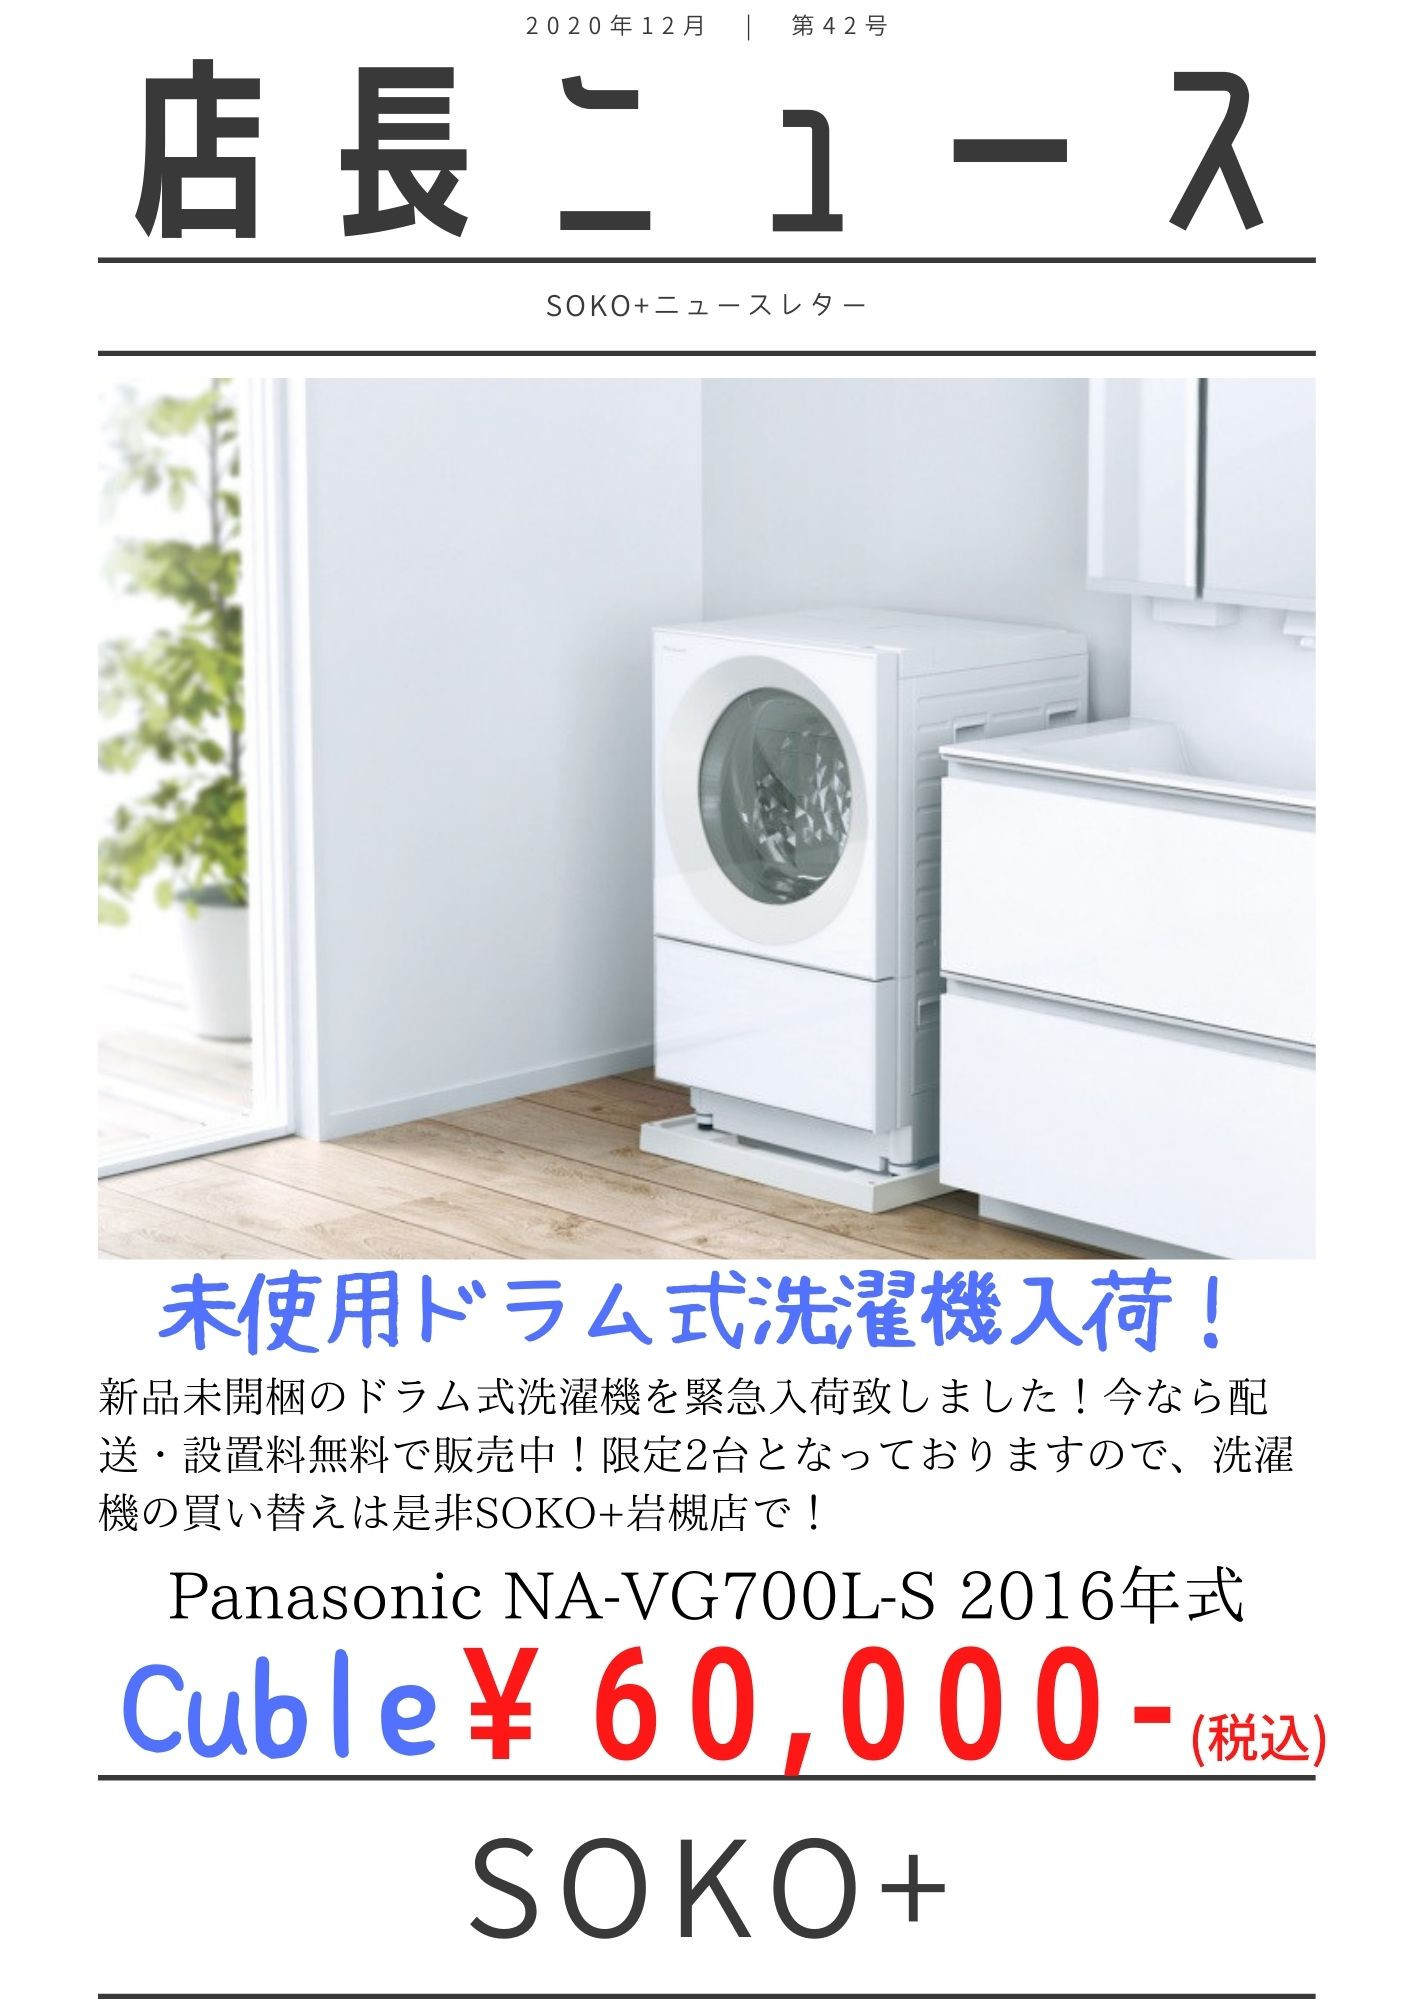 Panasonic NA-VG730L ドラム式洗濯機 キューブル分解洗浄 - 洗濯機